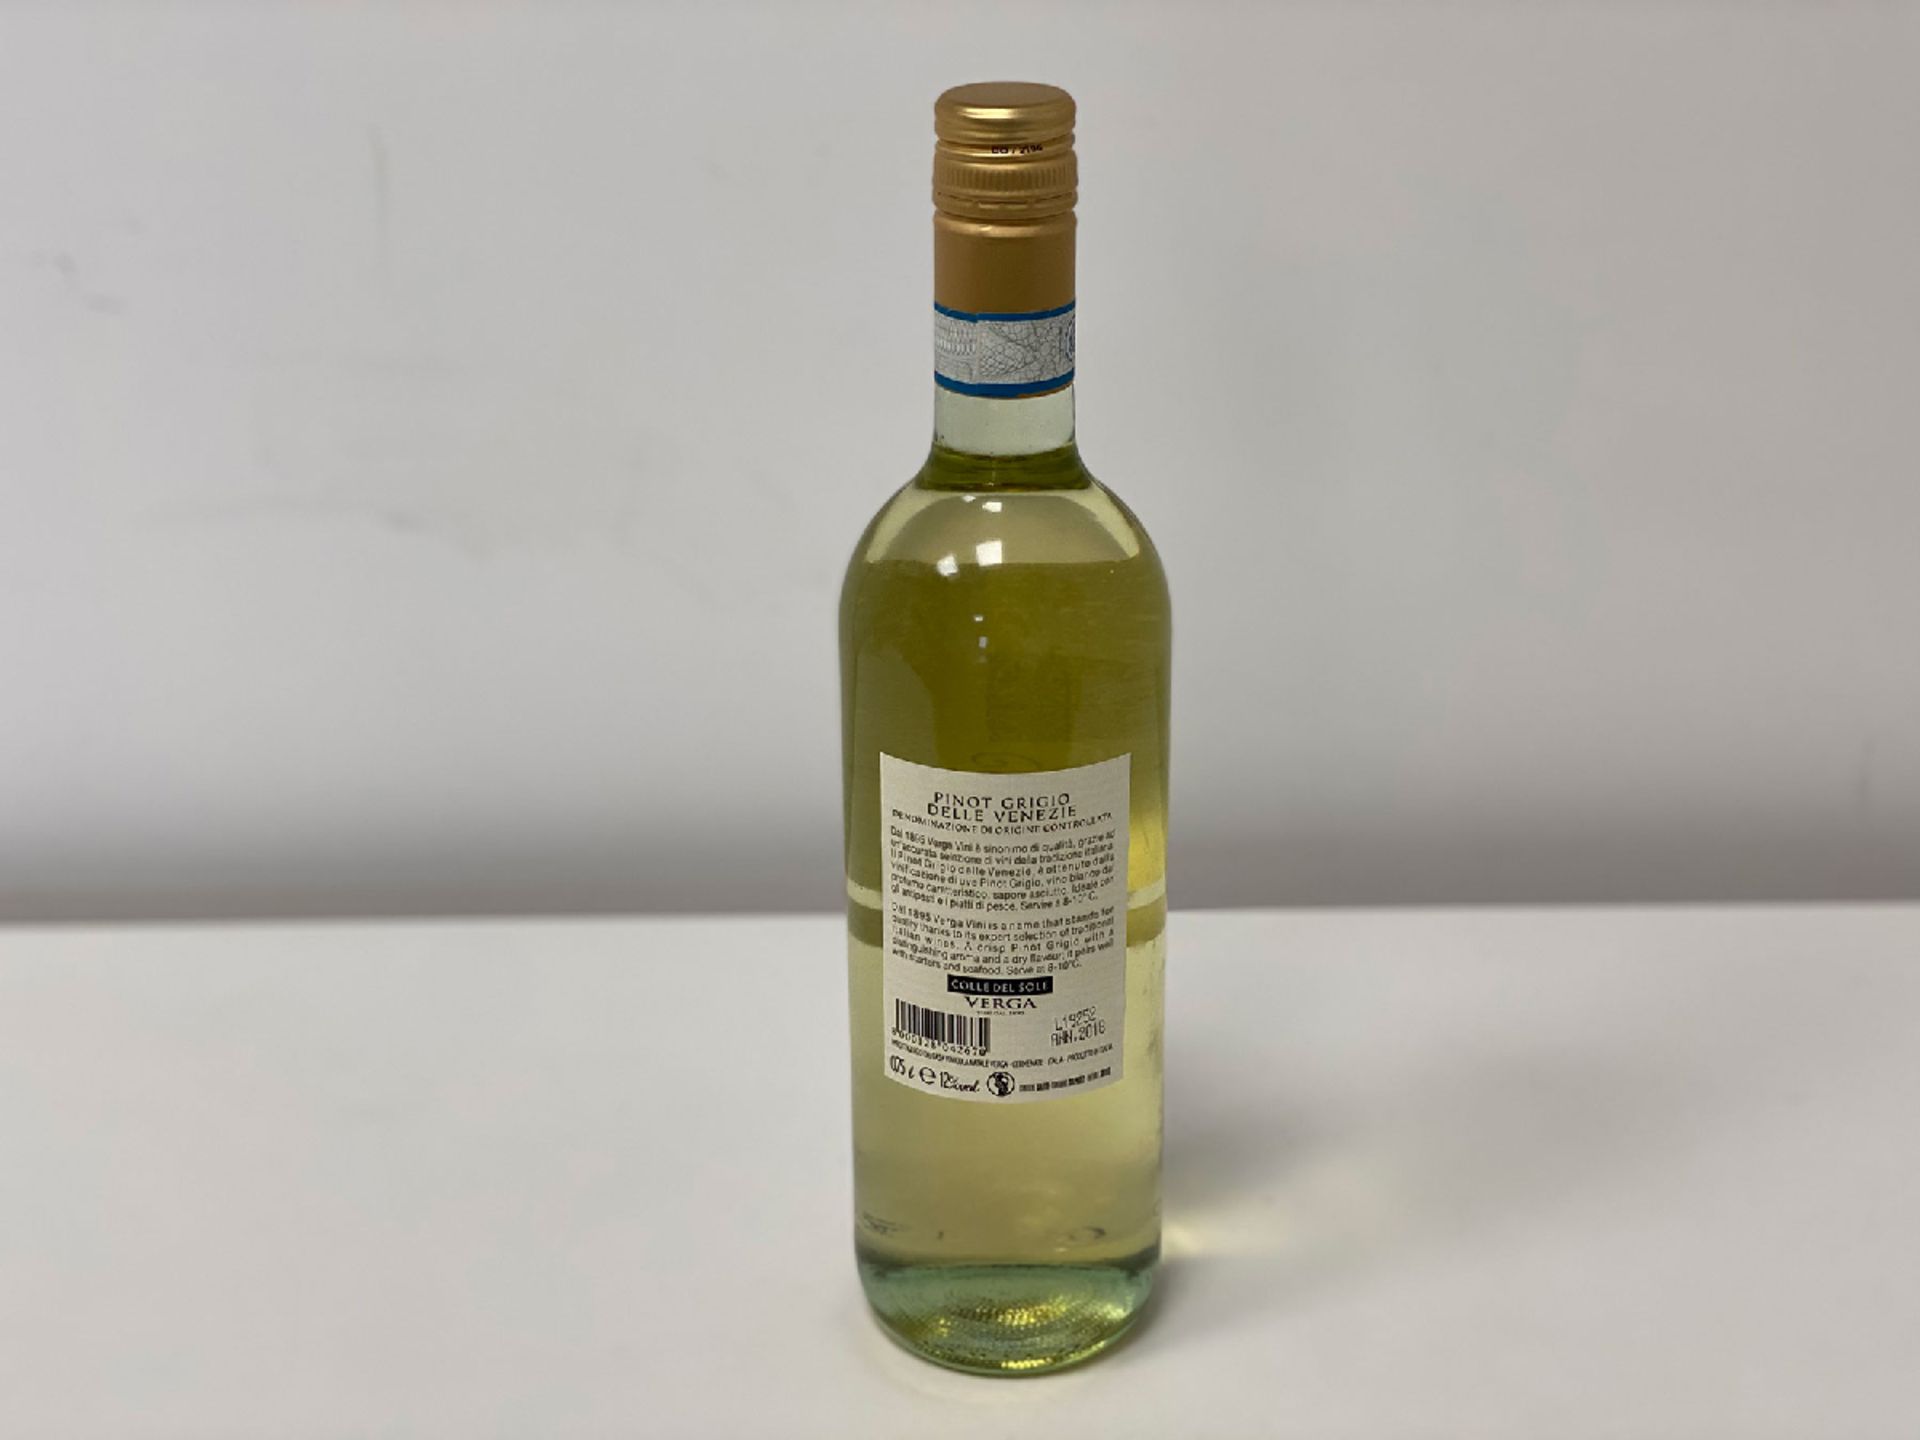 60 Bottles (10 Cases) of Natale Verga - Pinot Grigio - Colle del Sole - Venezie DOC - Natale Verga - Image 2 of 2